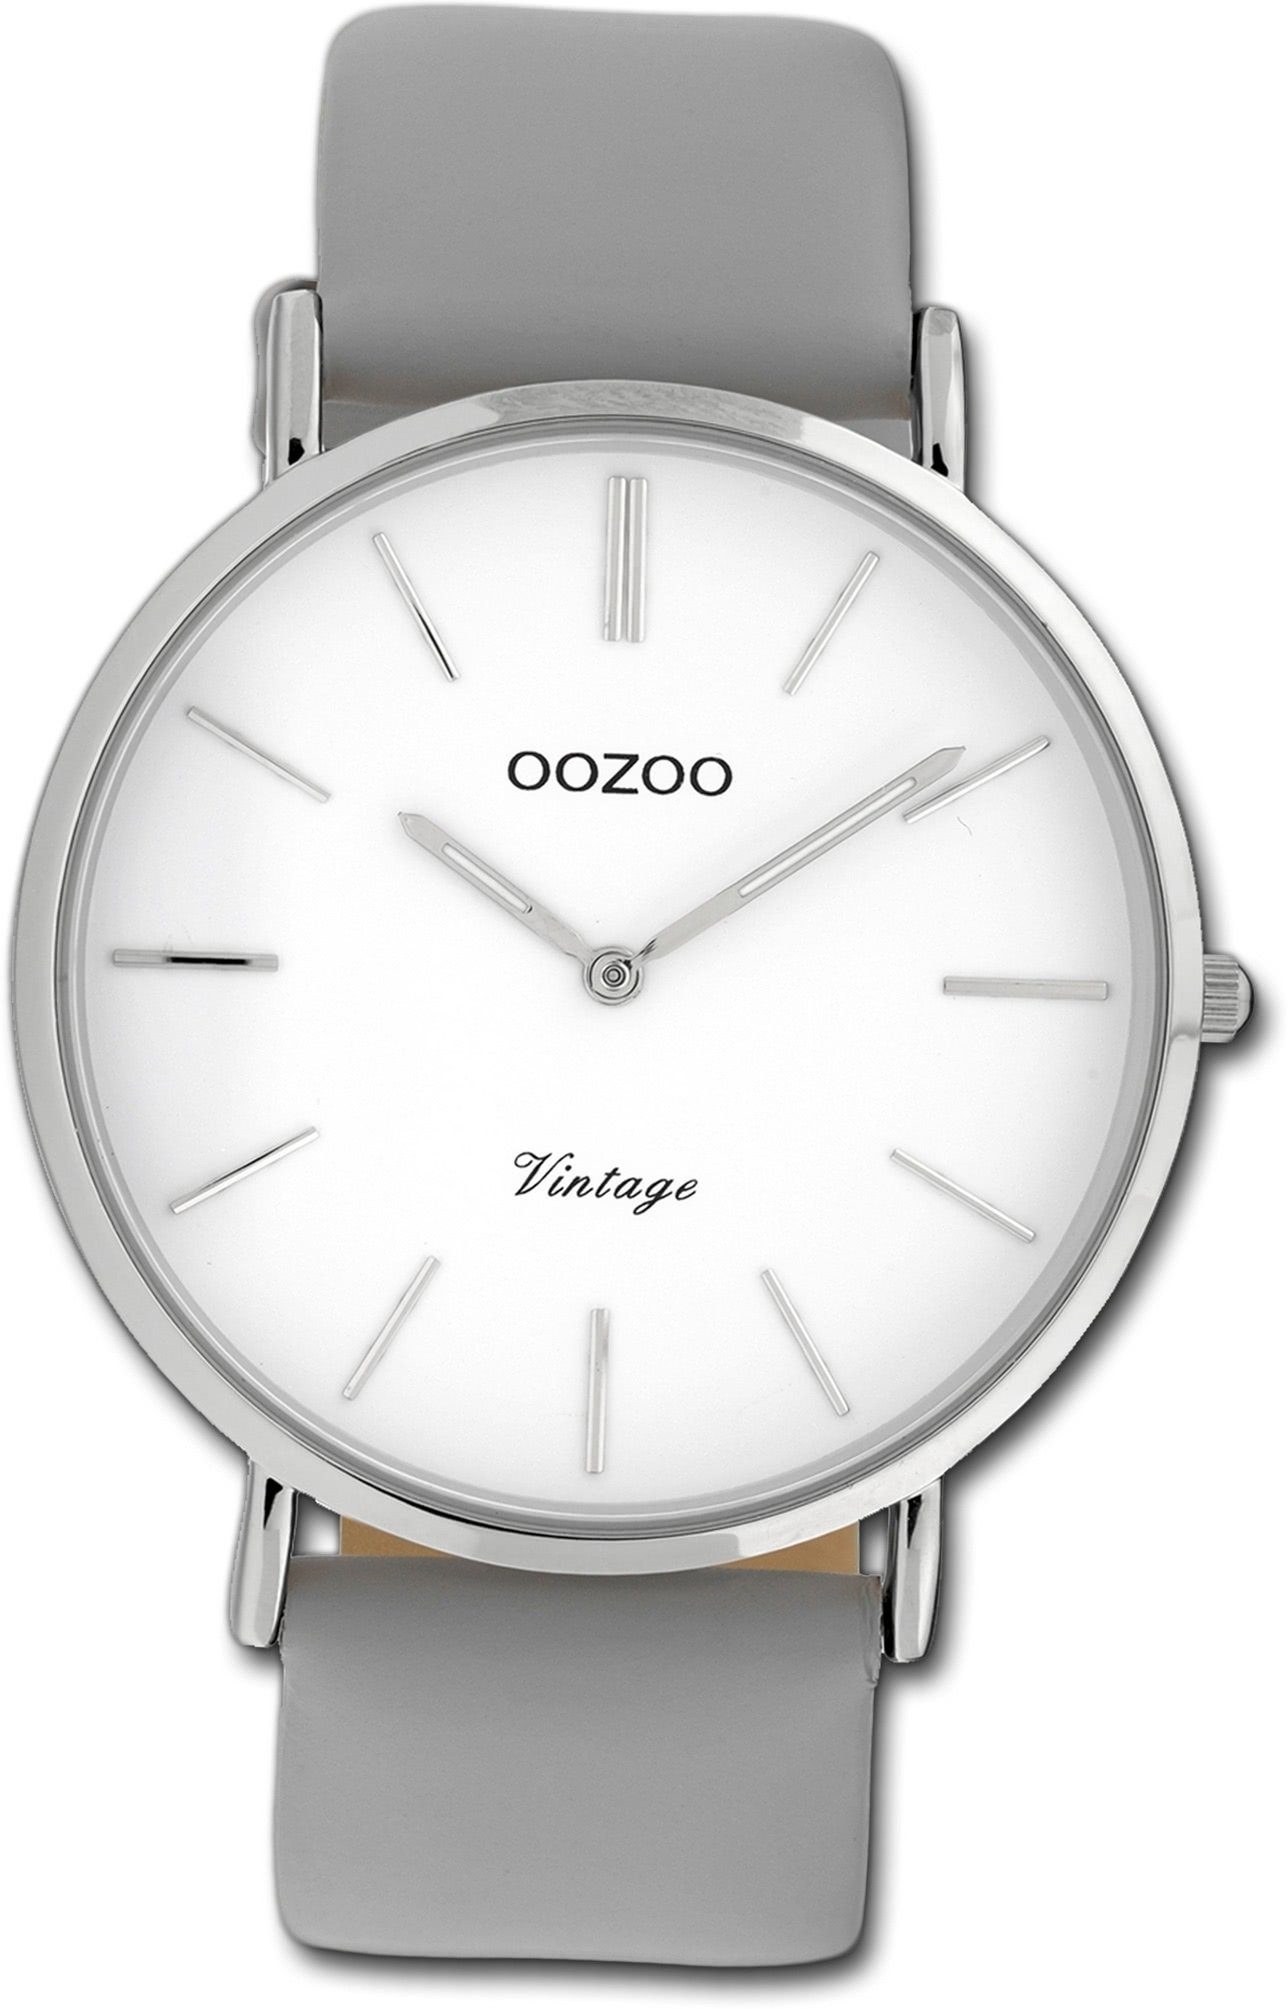 Leder weiß, Quarzuhr Uhr C20073 Damen groß (ca. Oozoo 40mm) Gehäuse, rundes Lederarmband Analog, OOZOO Damenuhr